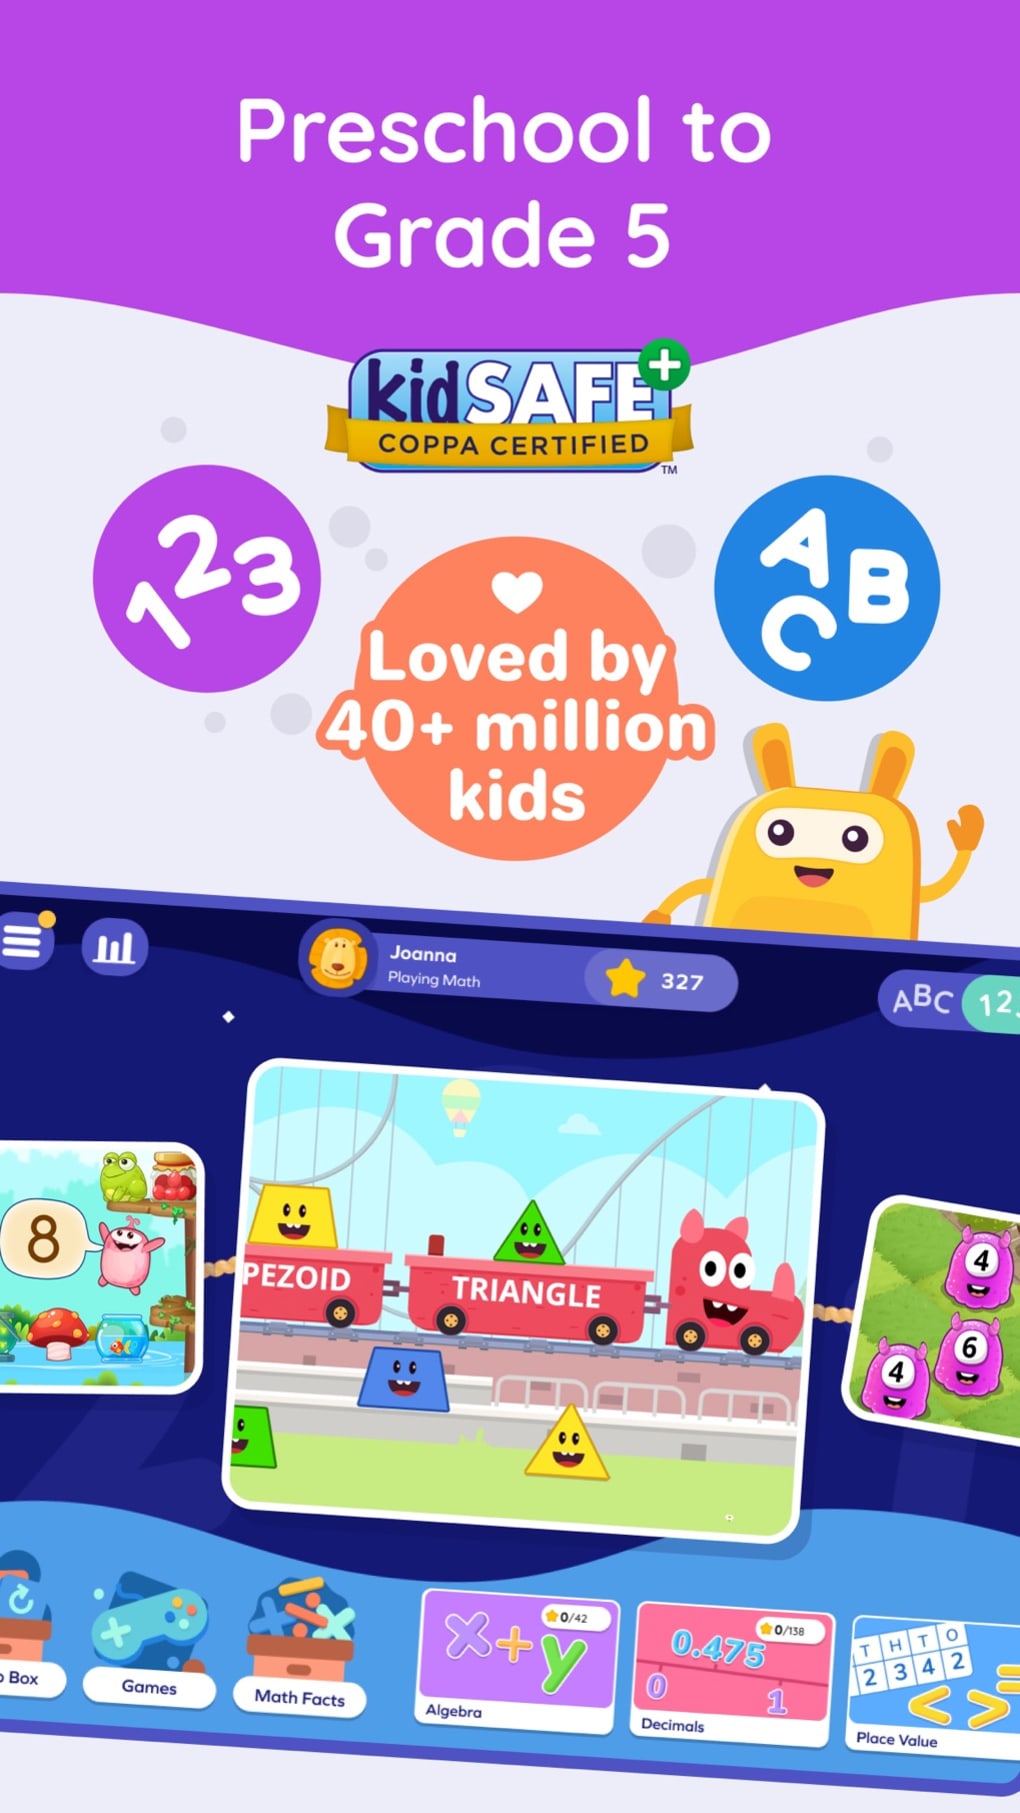 Match Aa - Dd Games for Kids Online - SplashLearn